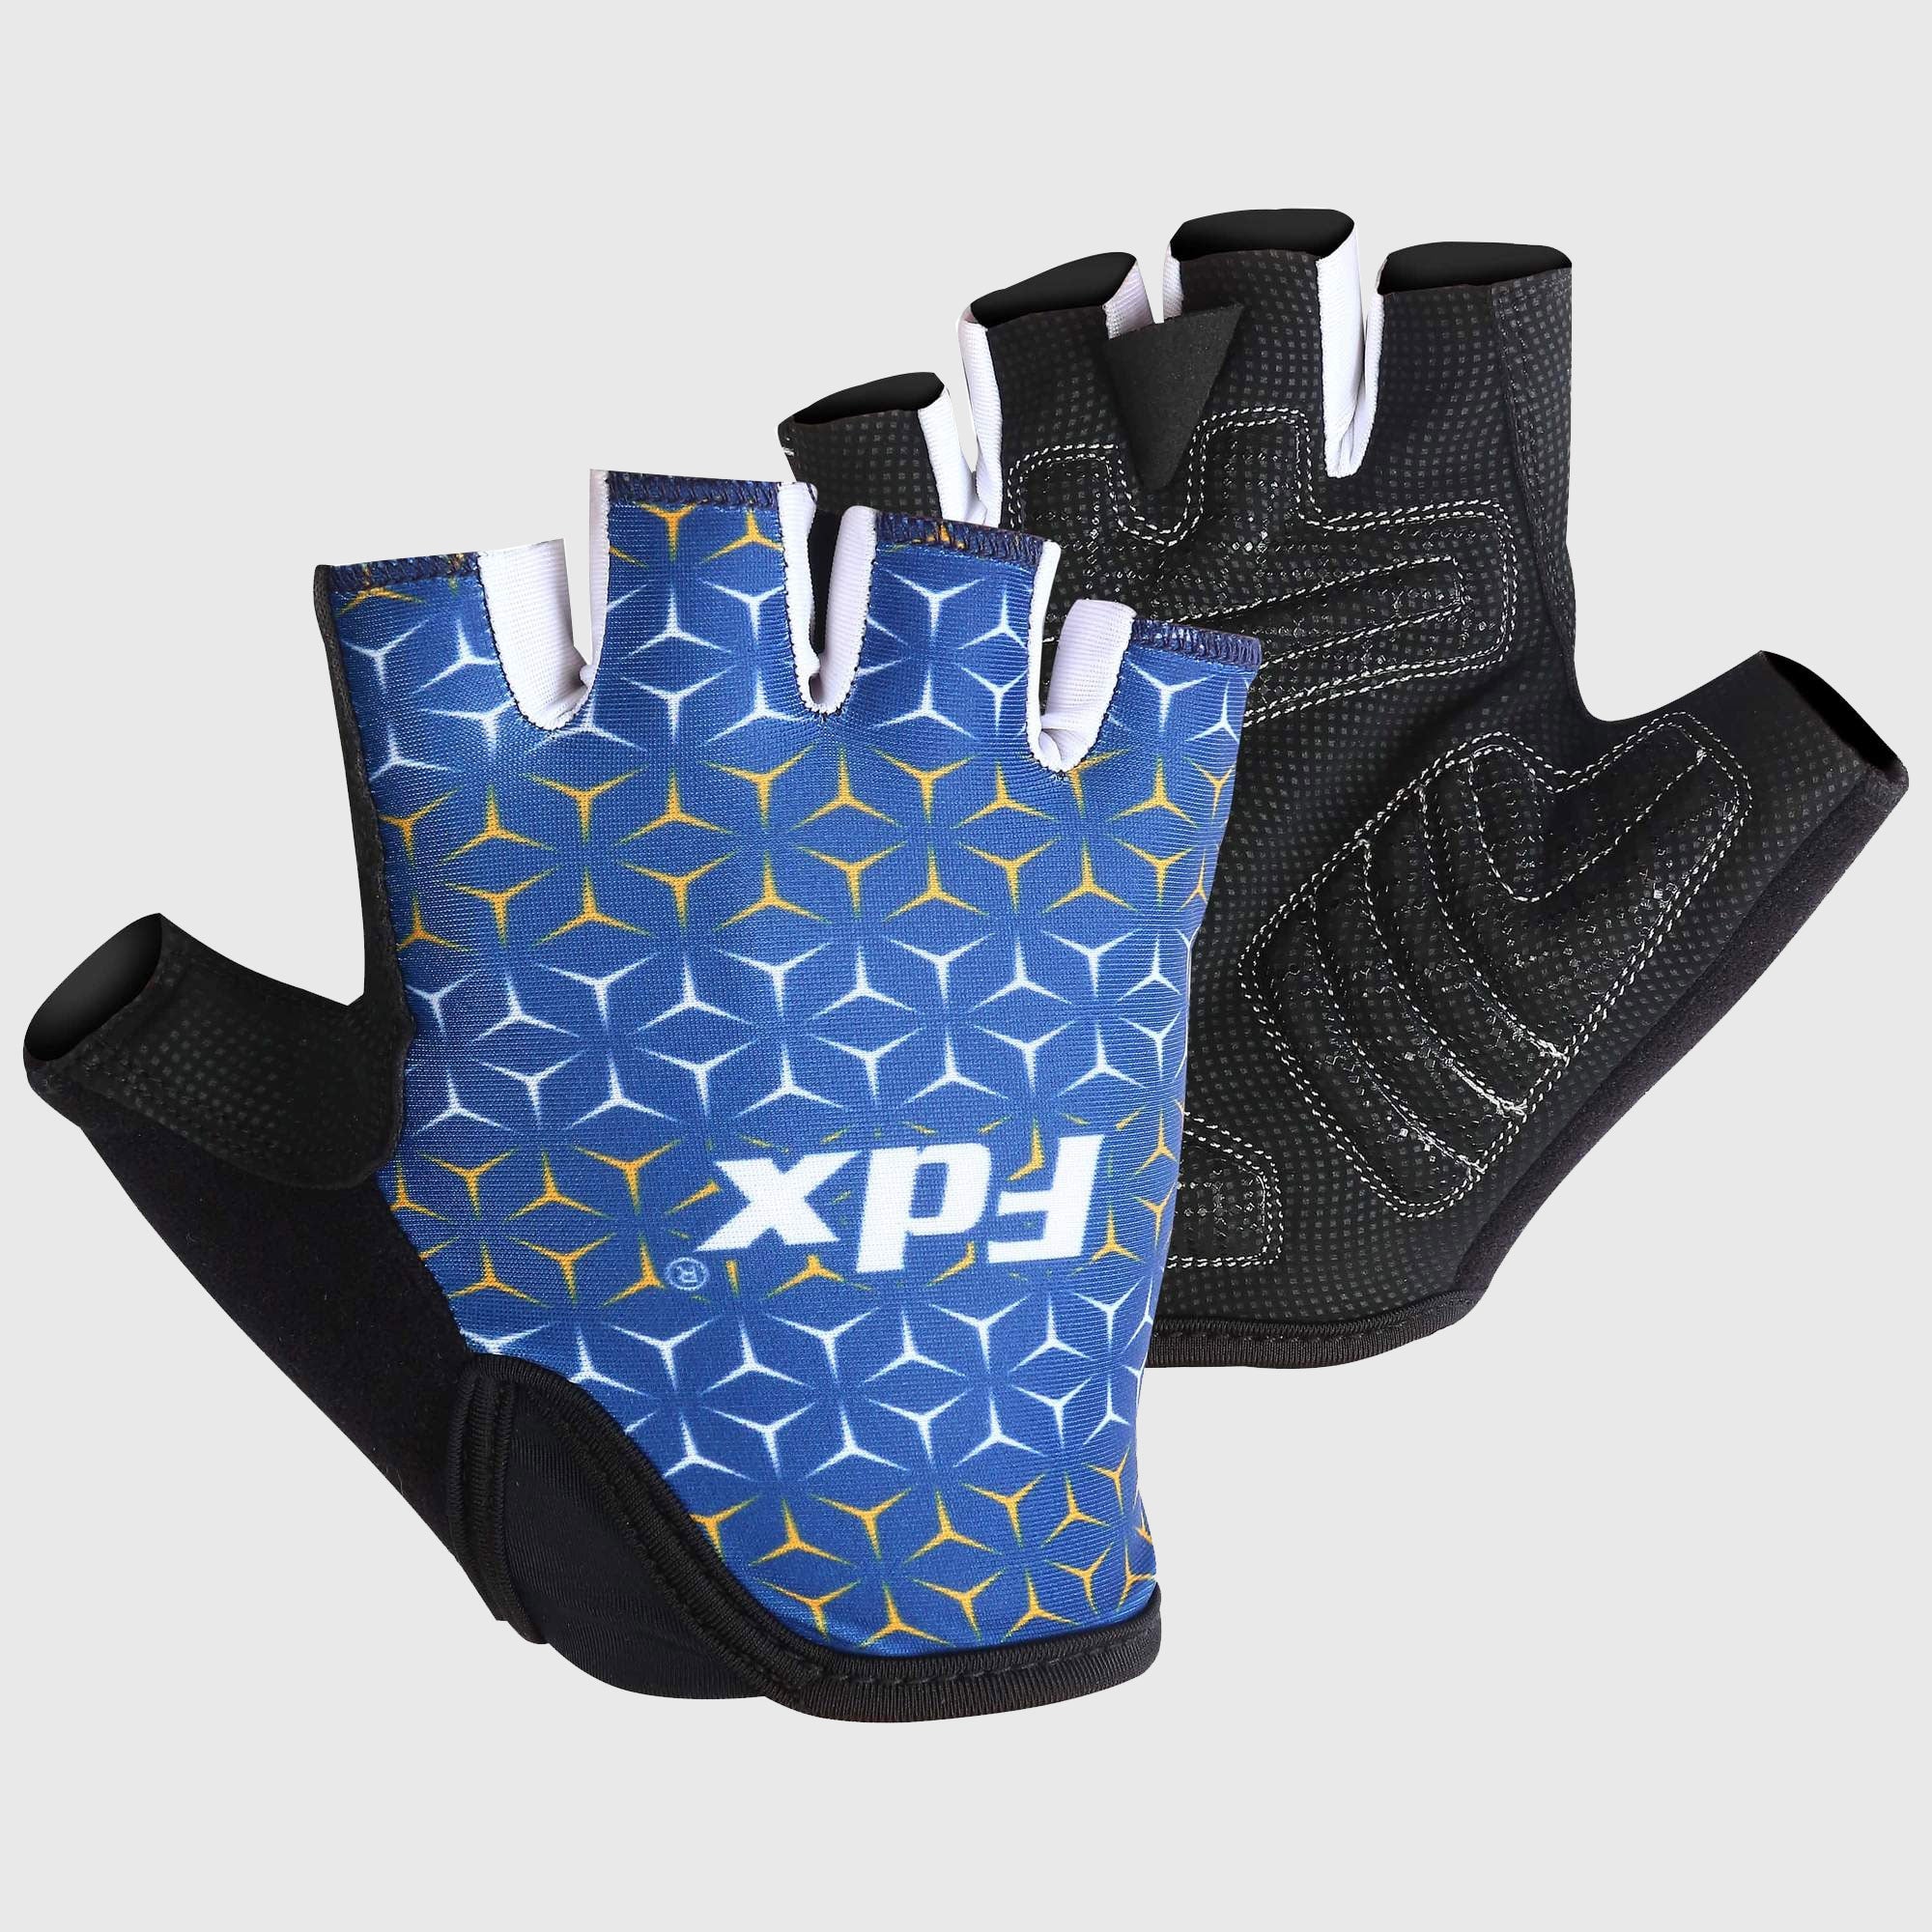 Fdx Black & Navy Blue Short Finger Cycling Gloves for Summer MTB Road Bike fingerless, anti slip & Breathable - Vega